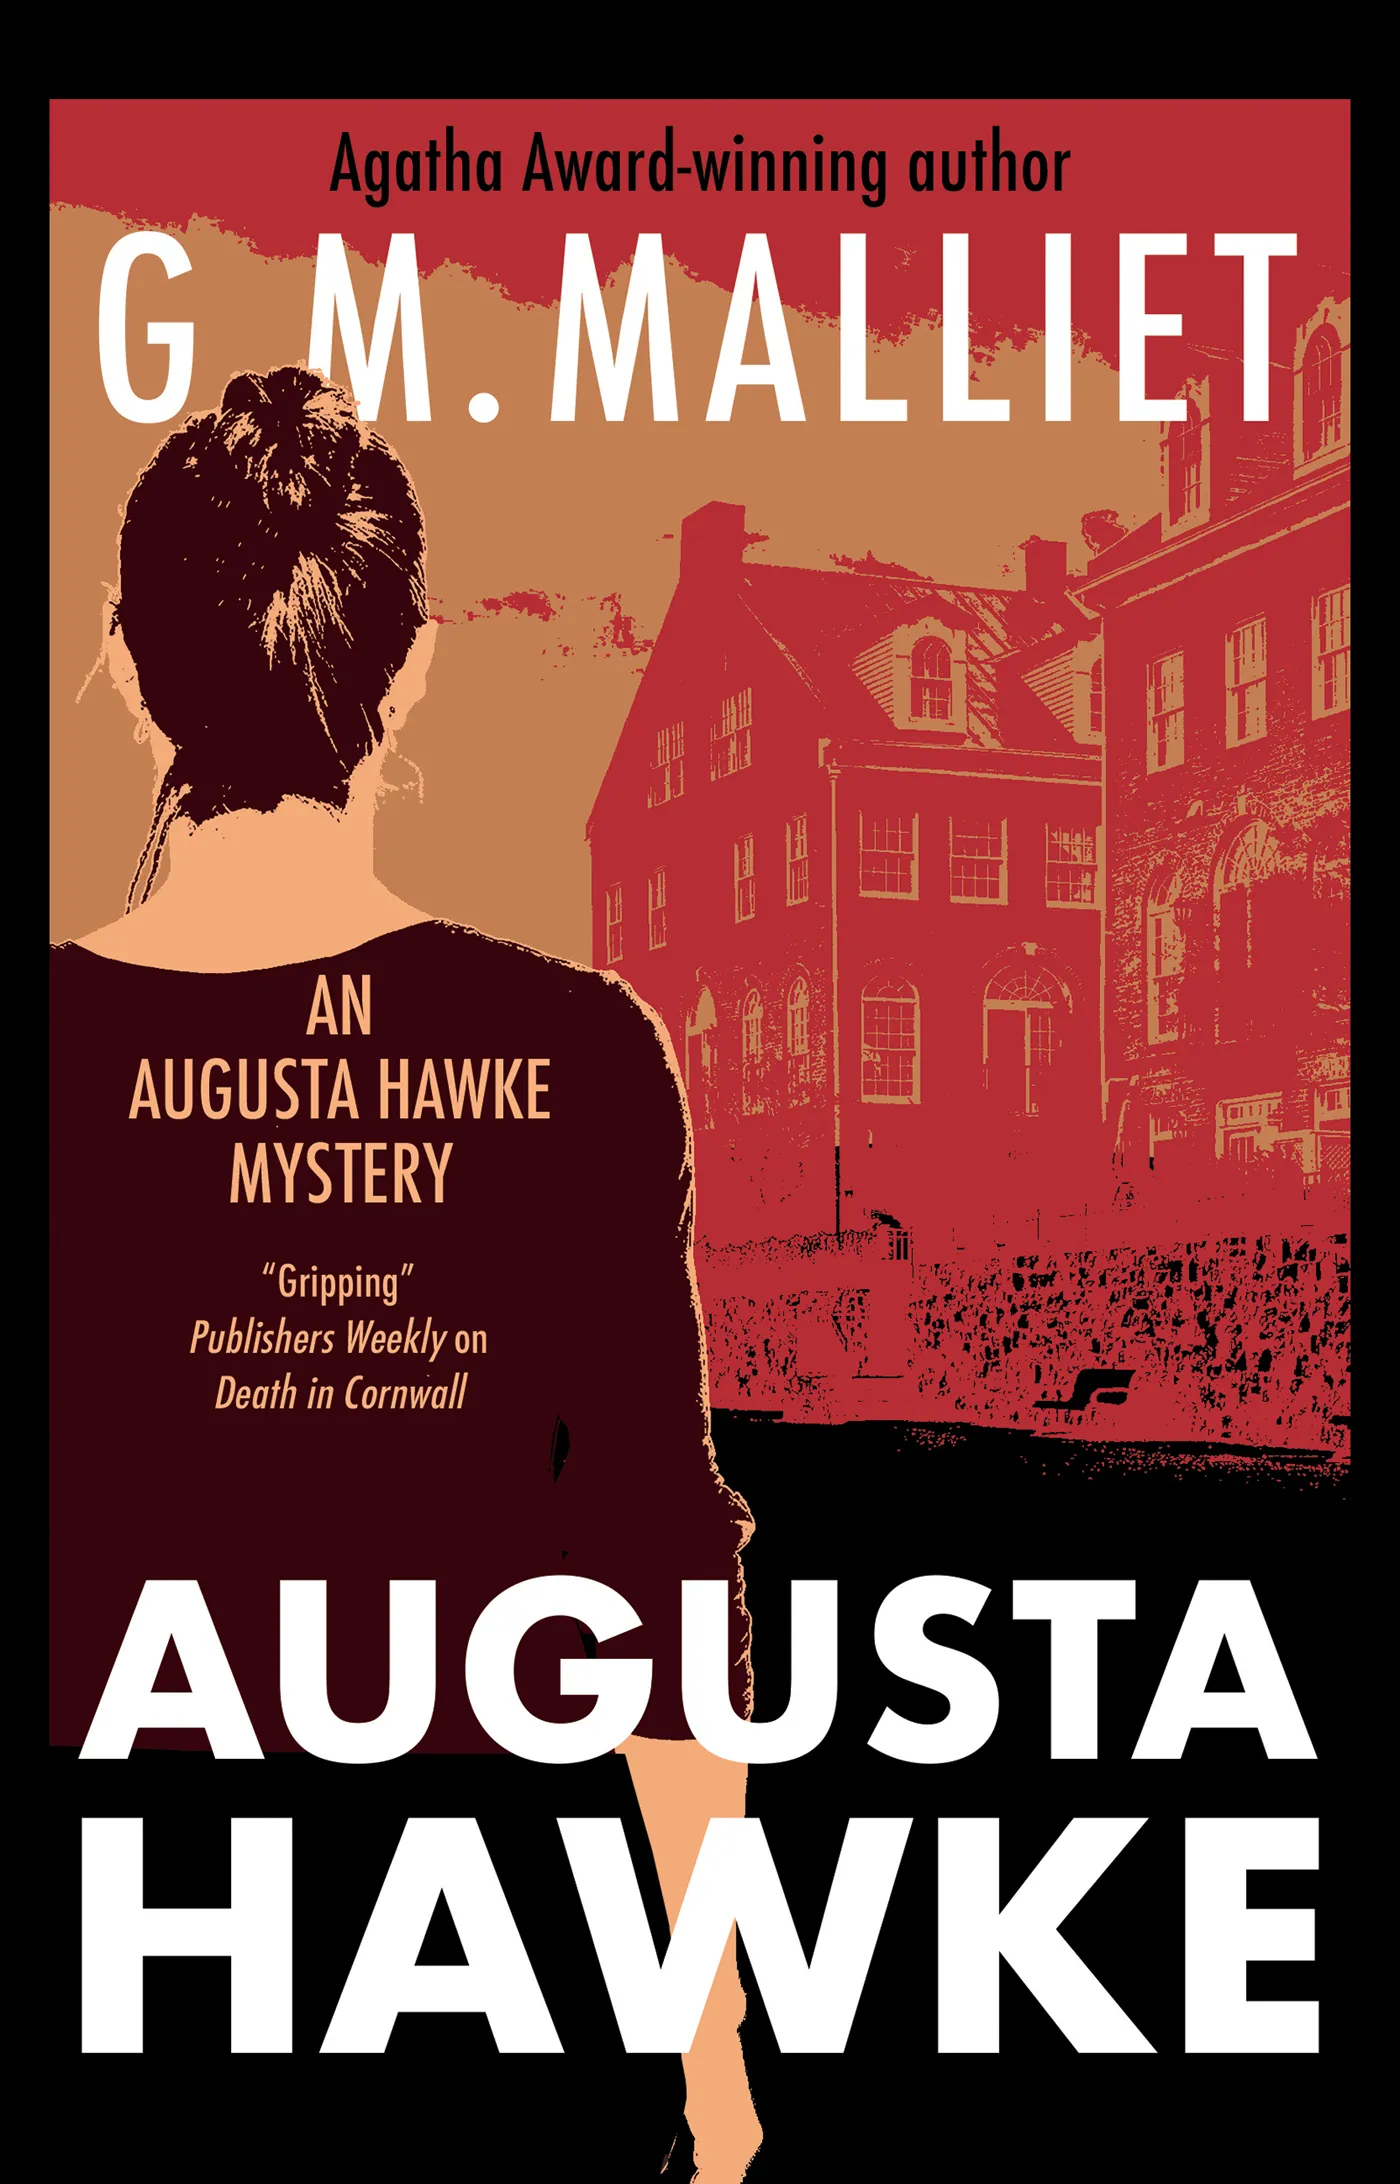 Augusta Hawke (An Augusta Hawke Mystery #1)